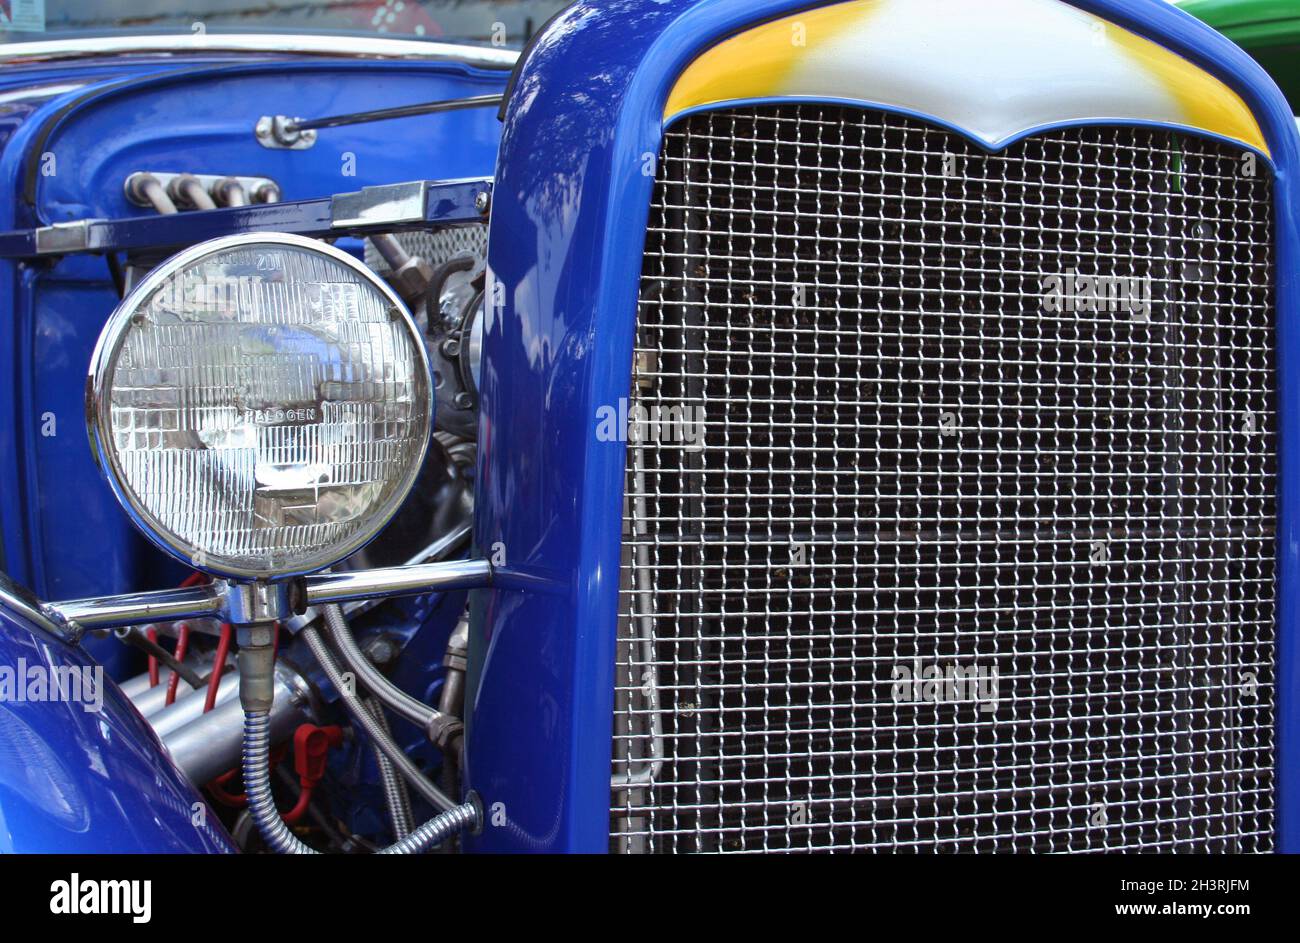 Antique Vintage Hot Rod Car Close-up Blue Stock Photo